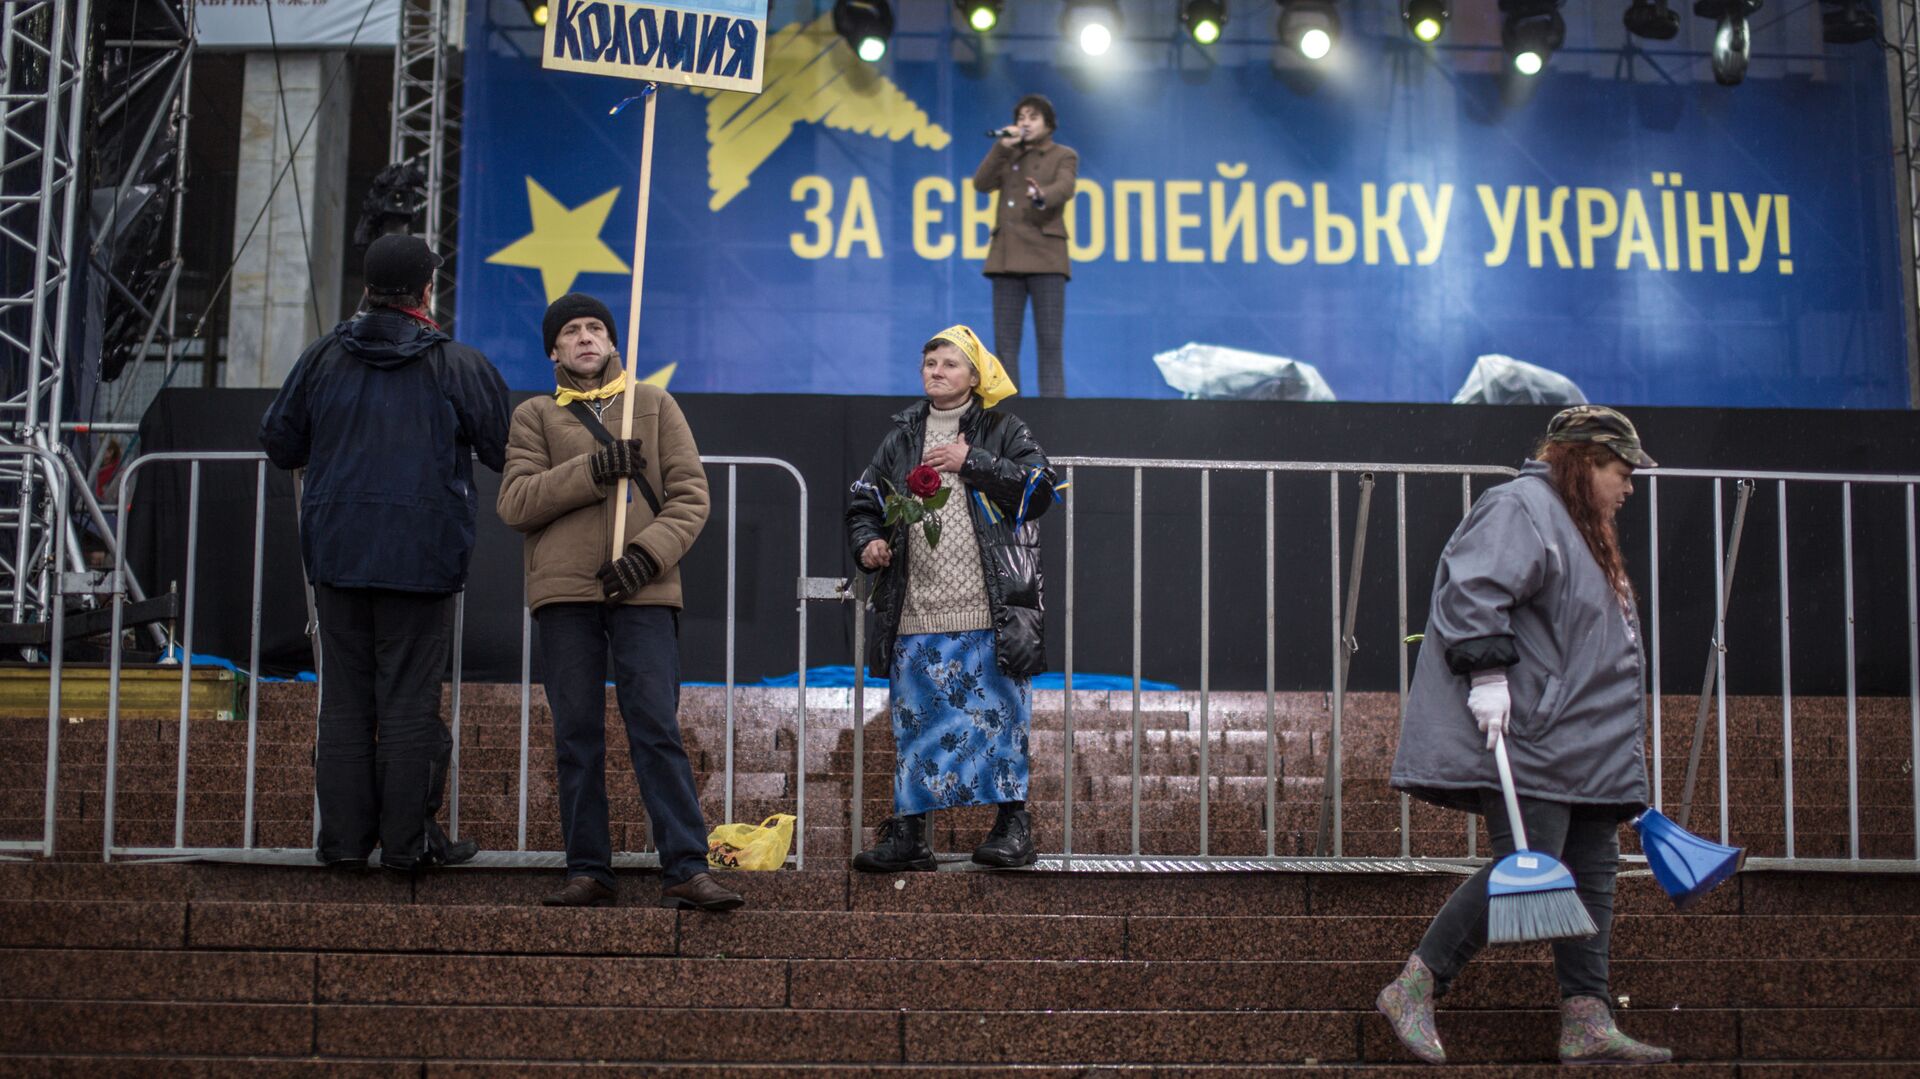 Сторонники евроинтеграции Украины около сцены на Европейской площади в Киеве - Sputnik Lietuva, 1920, 11.03.2022